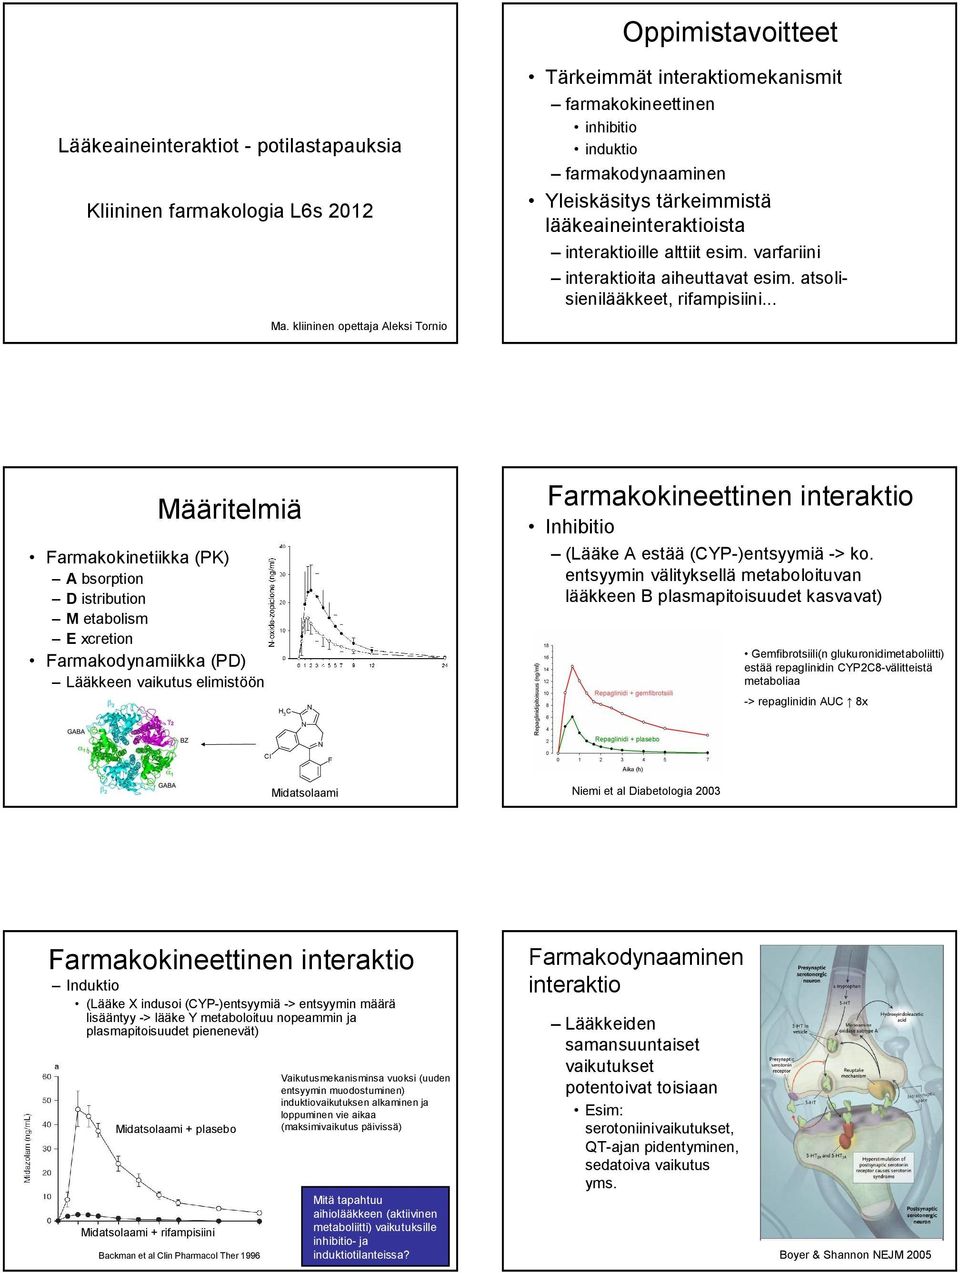 kliininen opettaja Aleksi Tornio Määritelmiä Farmakokinetiikka (PK) A bsorption D istribution M etabolism E xcretion Farmakodynamiikka (PD) Lääkkeen vaikutus elimistöön H 3 C N Farmakokineettinen